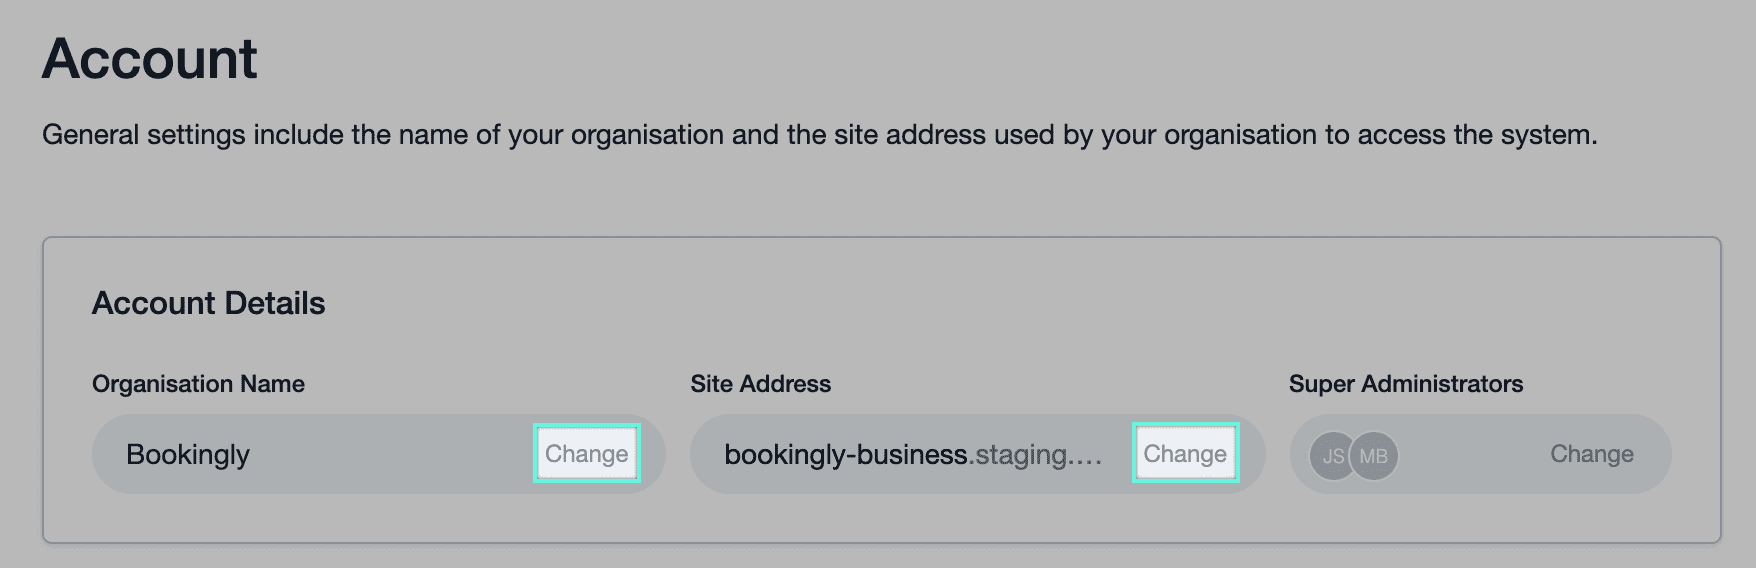 Enlace al nombre de la organización y a la dirección del sitio con botones “cambiar” junto a cada uno que permiten al usuario actualizar